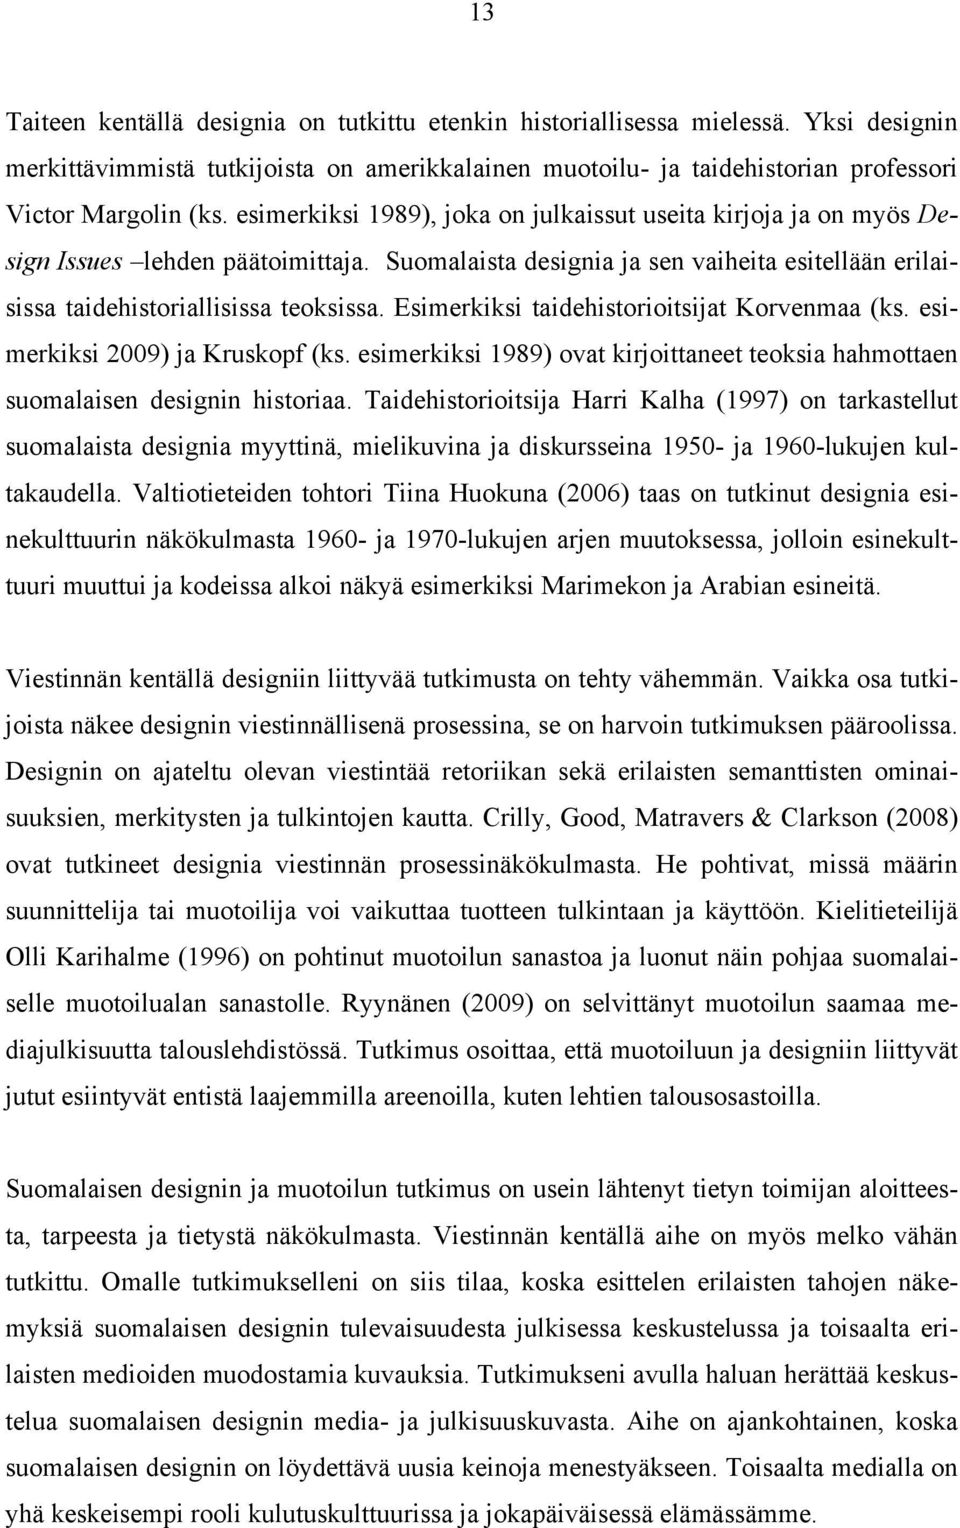 Esimerkiksi taidehistorioitsijat Korvenmaa (ks. esimerkiksi 2009) ja Kruskopf (ks. esimerkiksi 1989) ovat kirjoittaneet teoksia hahmottaen suomalaisen designin historiaa.